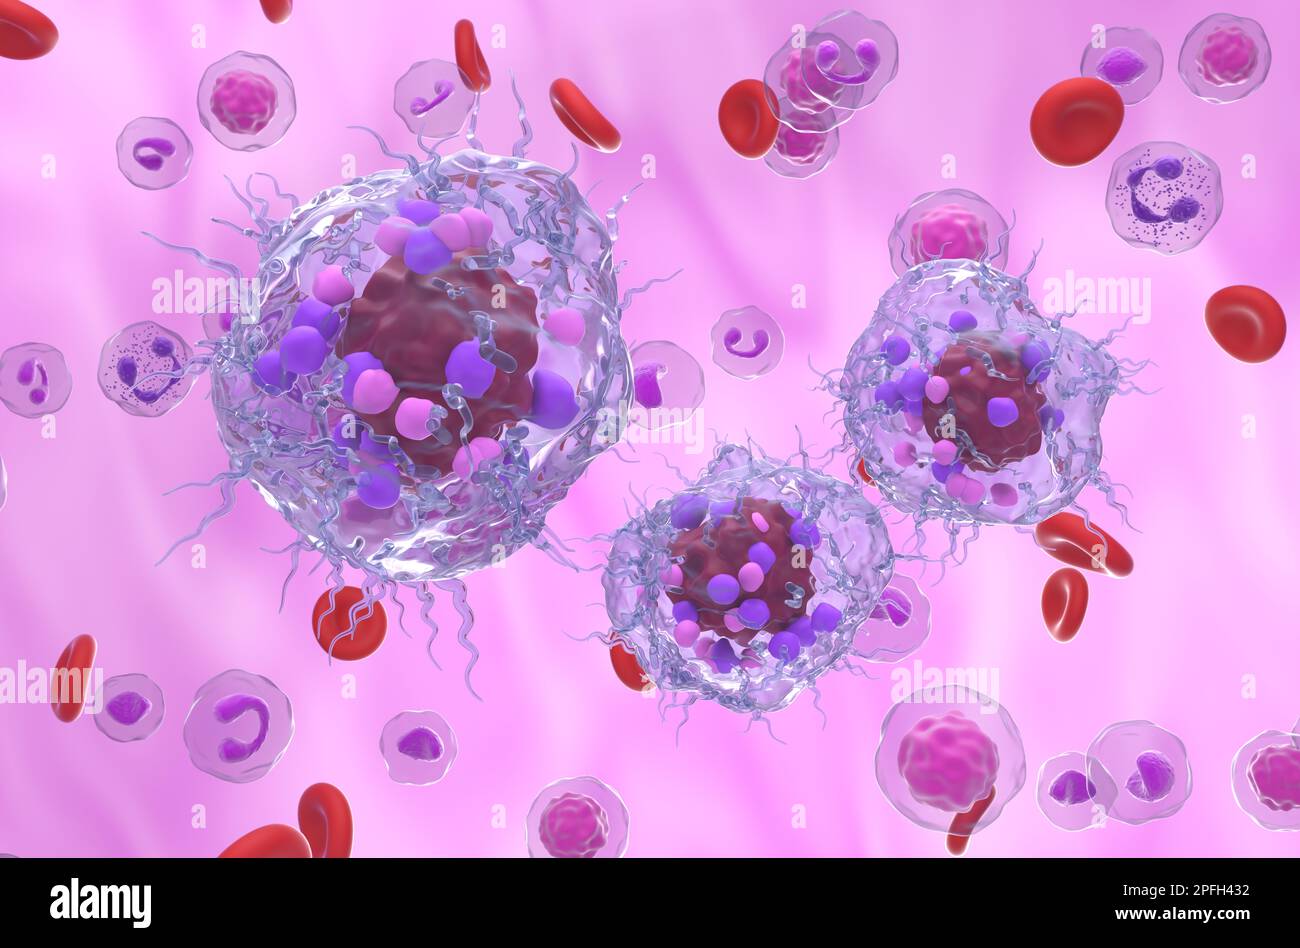 Cellules tumorales neuroendocrines métastatiques dans le flux sanguin - 3D illustration vue isométrique Banque D'Images